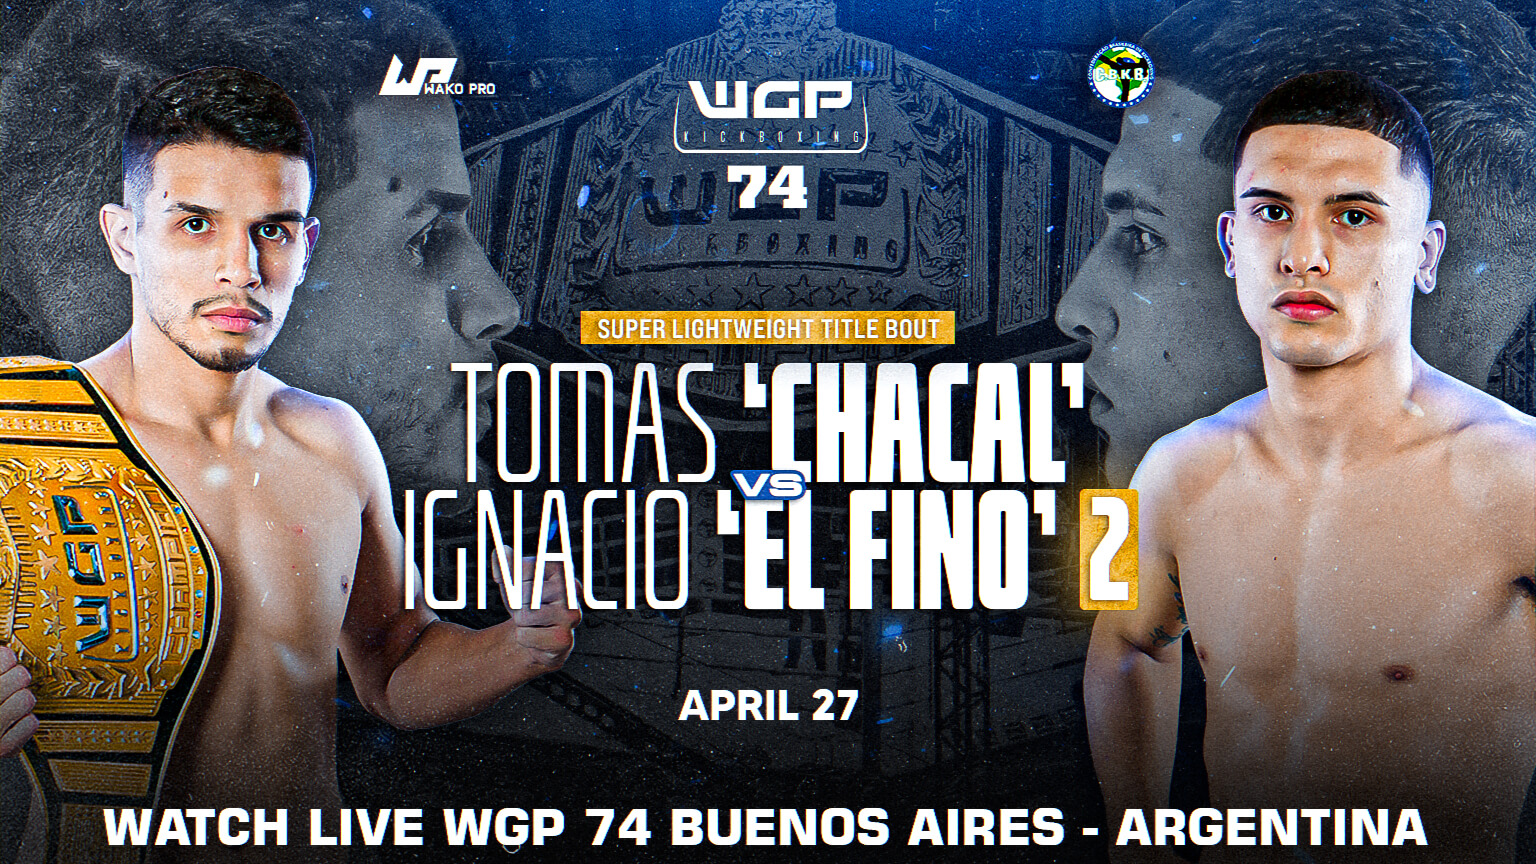 WGP 74: Tomas ‘Chacal’ Aguirre vs Ignacio ‘El Fino’ 2